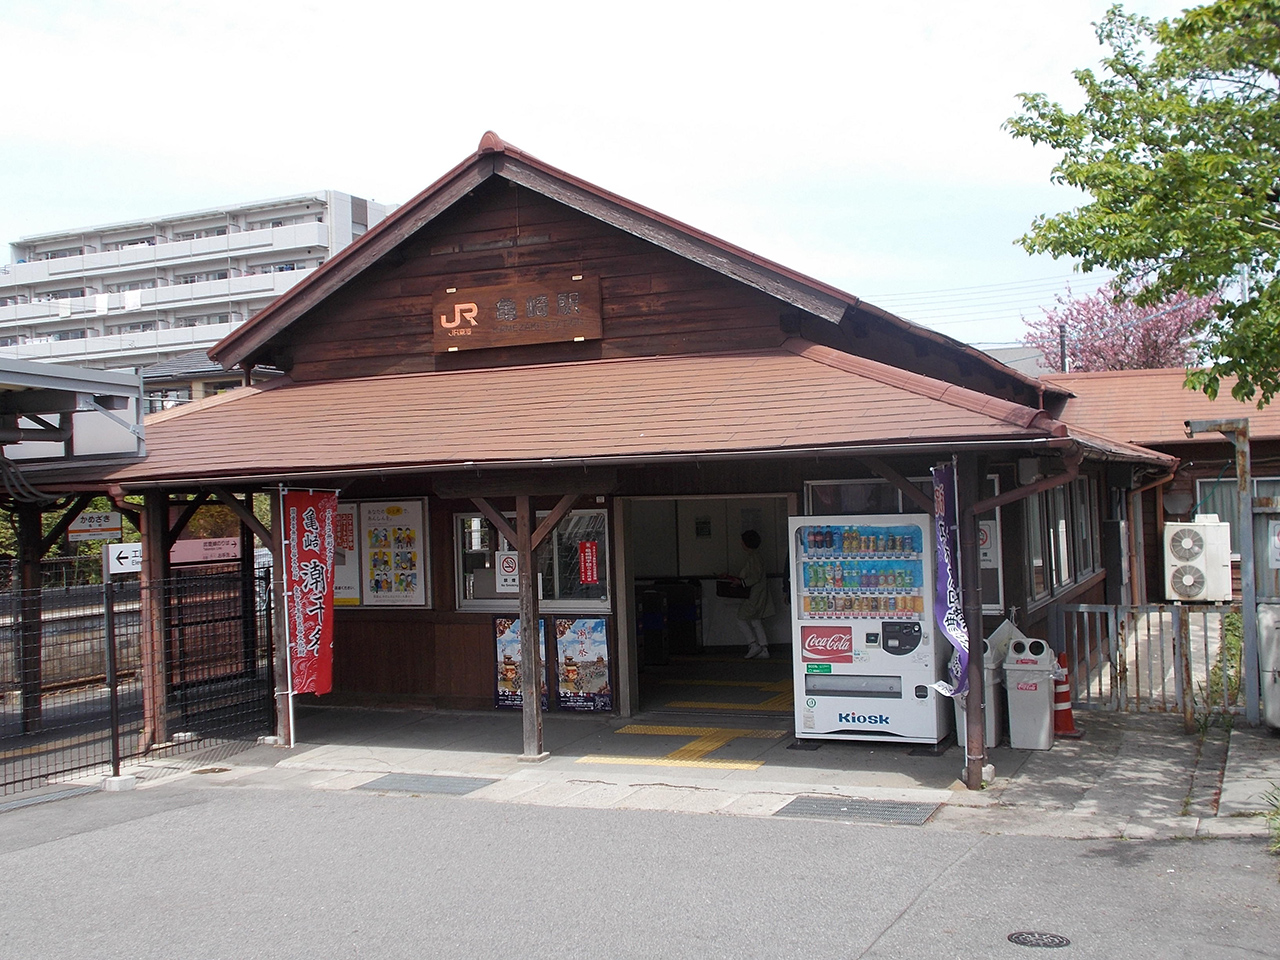 สถานีคาเมะซากิ (Kamezaki Station) : สถานี รถไฟ เก่าแก่ที่สุดของ ญี่ปุ่น